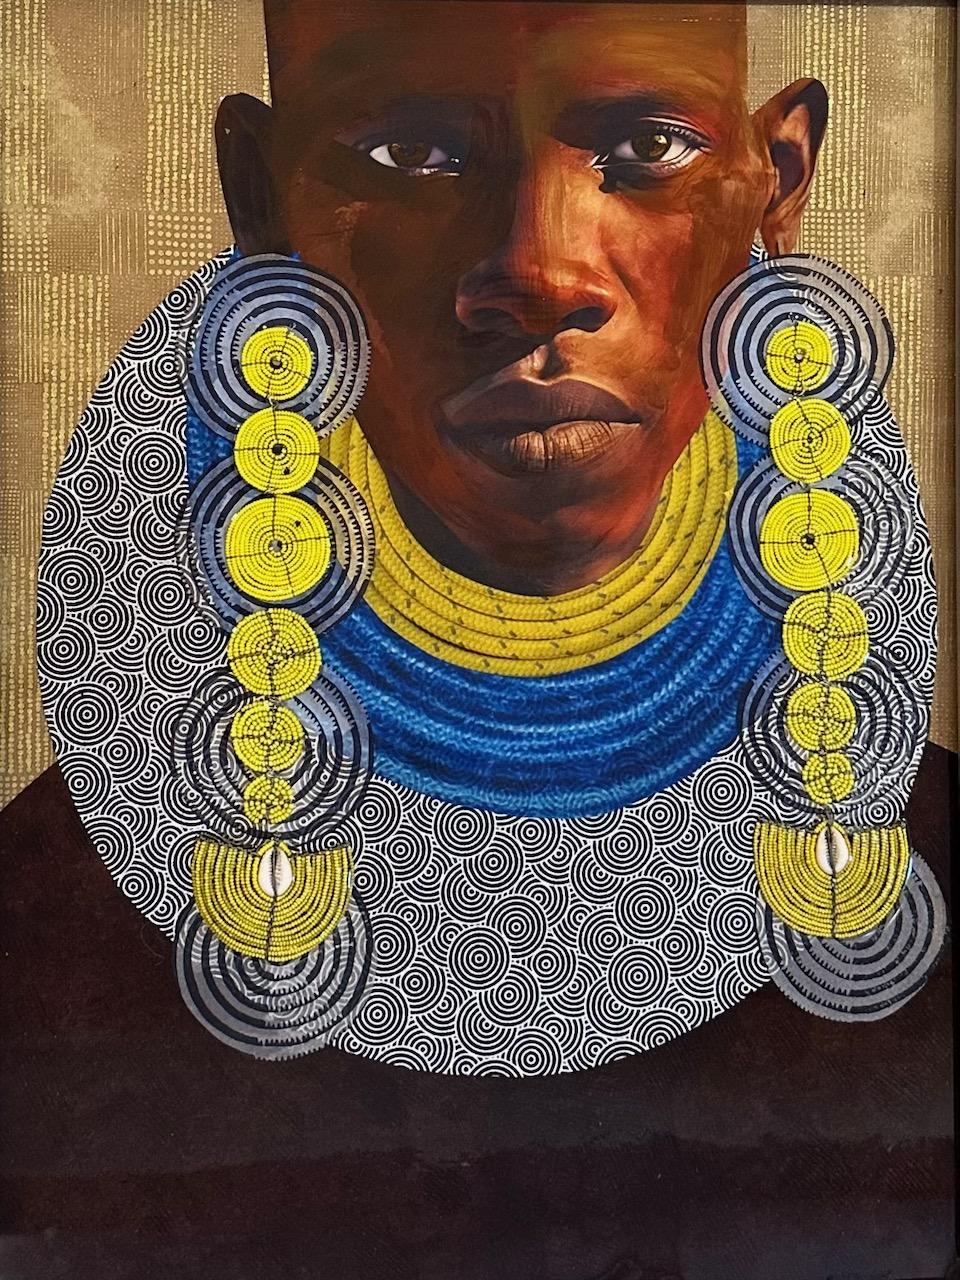 "Visions tribales" Personne africaine portant des boucles d'oreilles jaunes et des colliers de corde